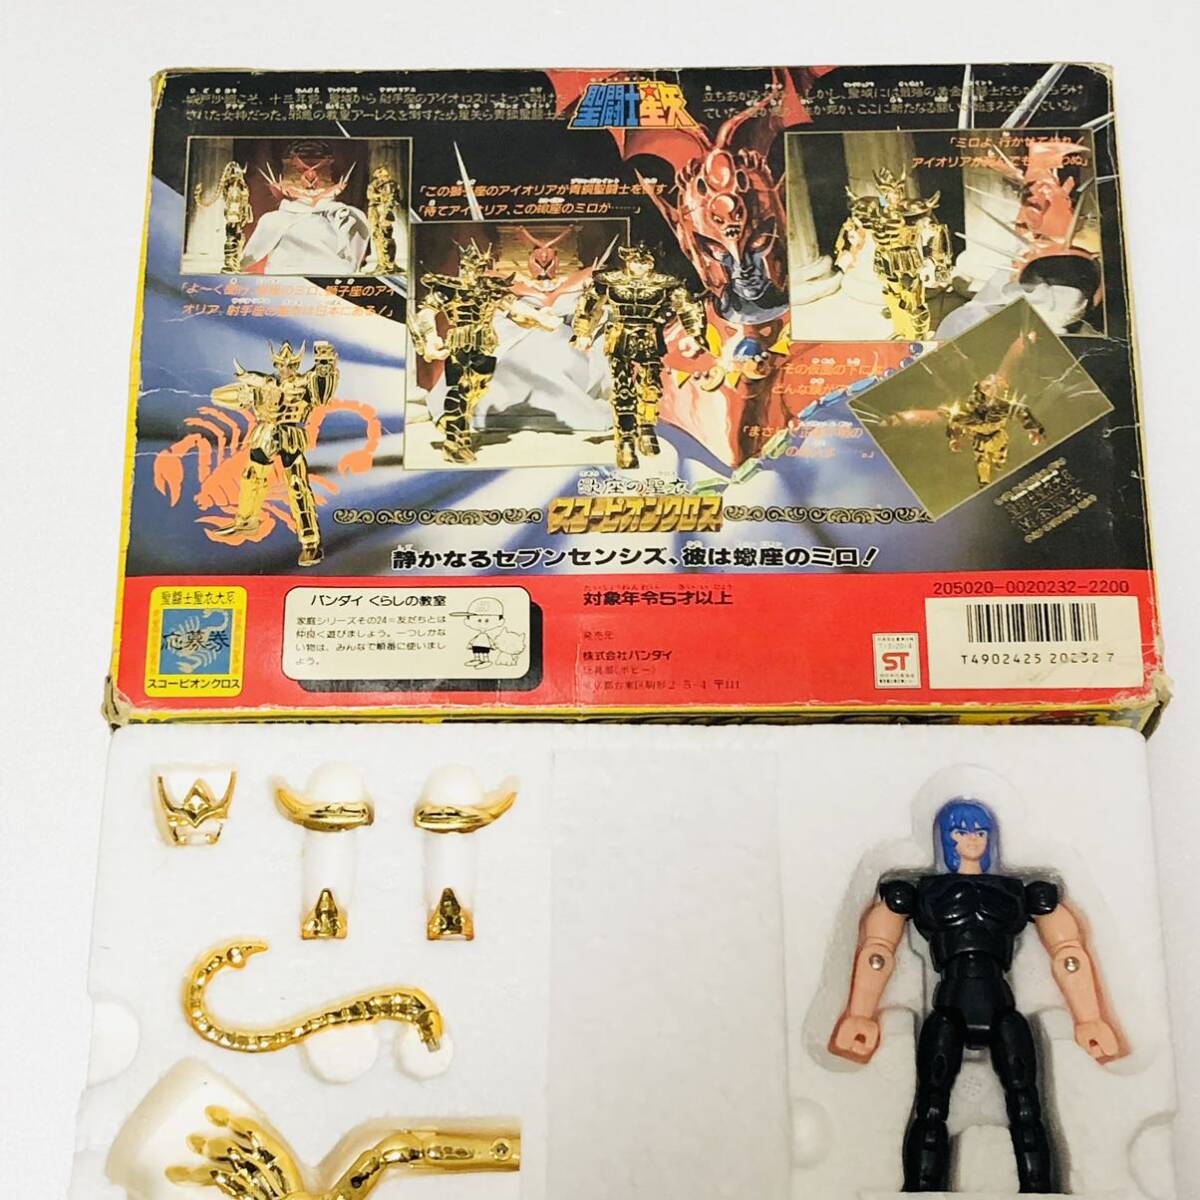  Saint Seiya ... плащаница большой серия Scorpion Cross желтый золотой плащаница Bandai Saint Seiya Myth Cloth Showa Chogokin Cross игрушка не использовался . близкий прекрасный товар 